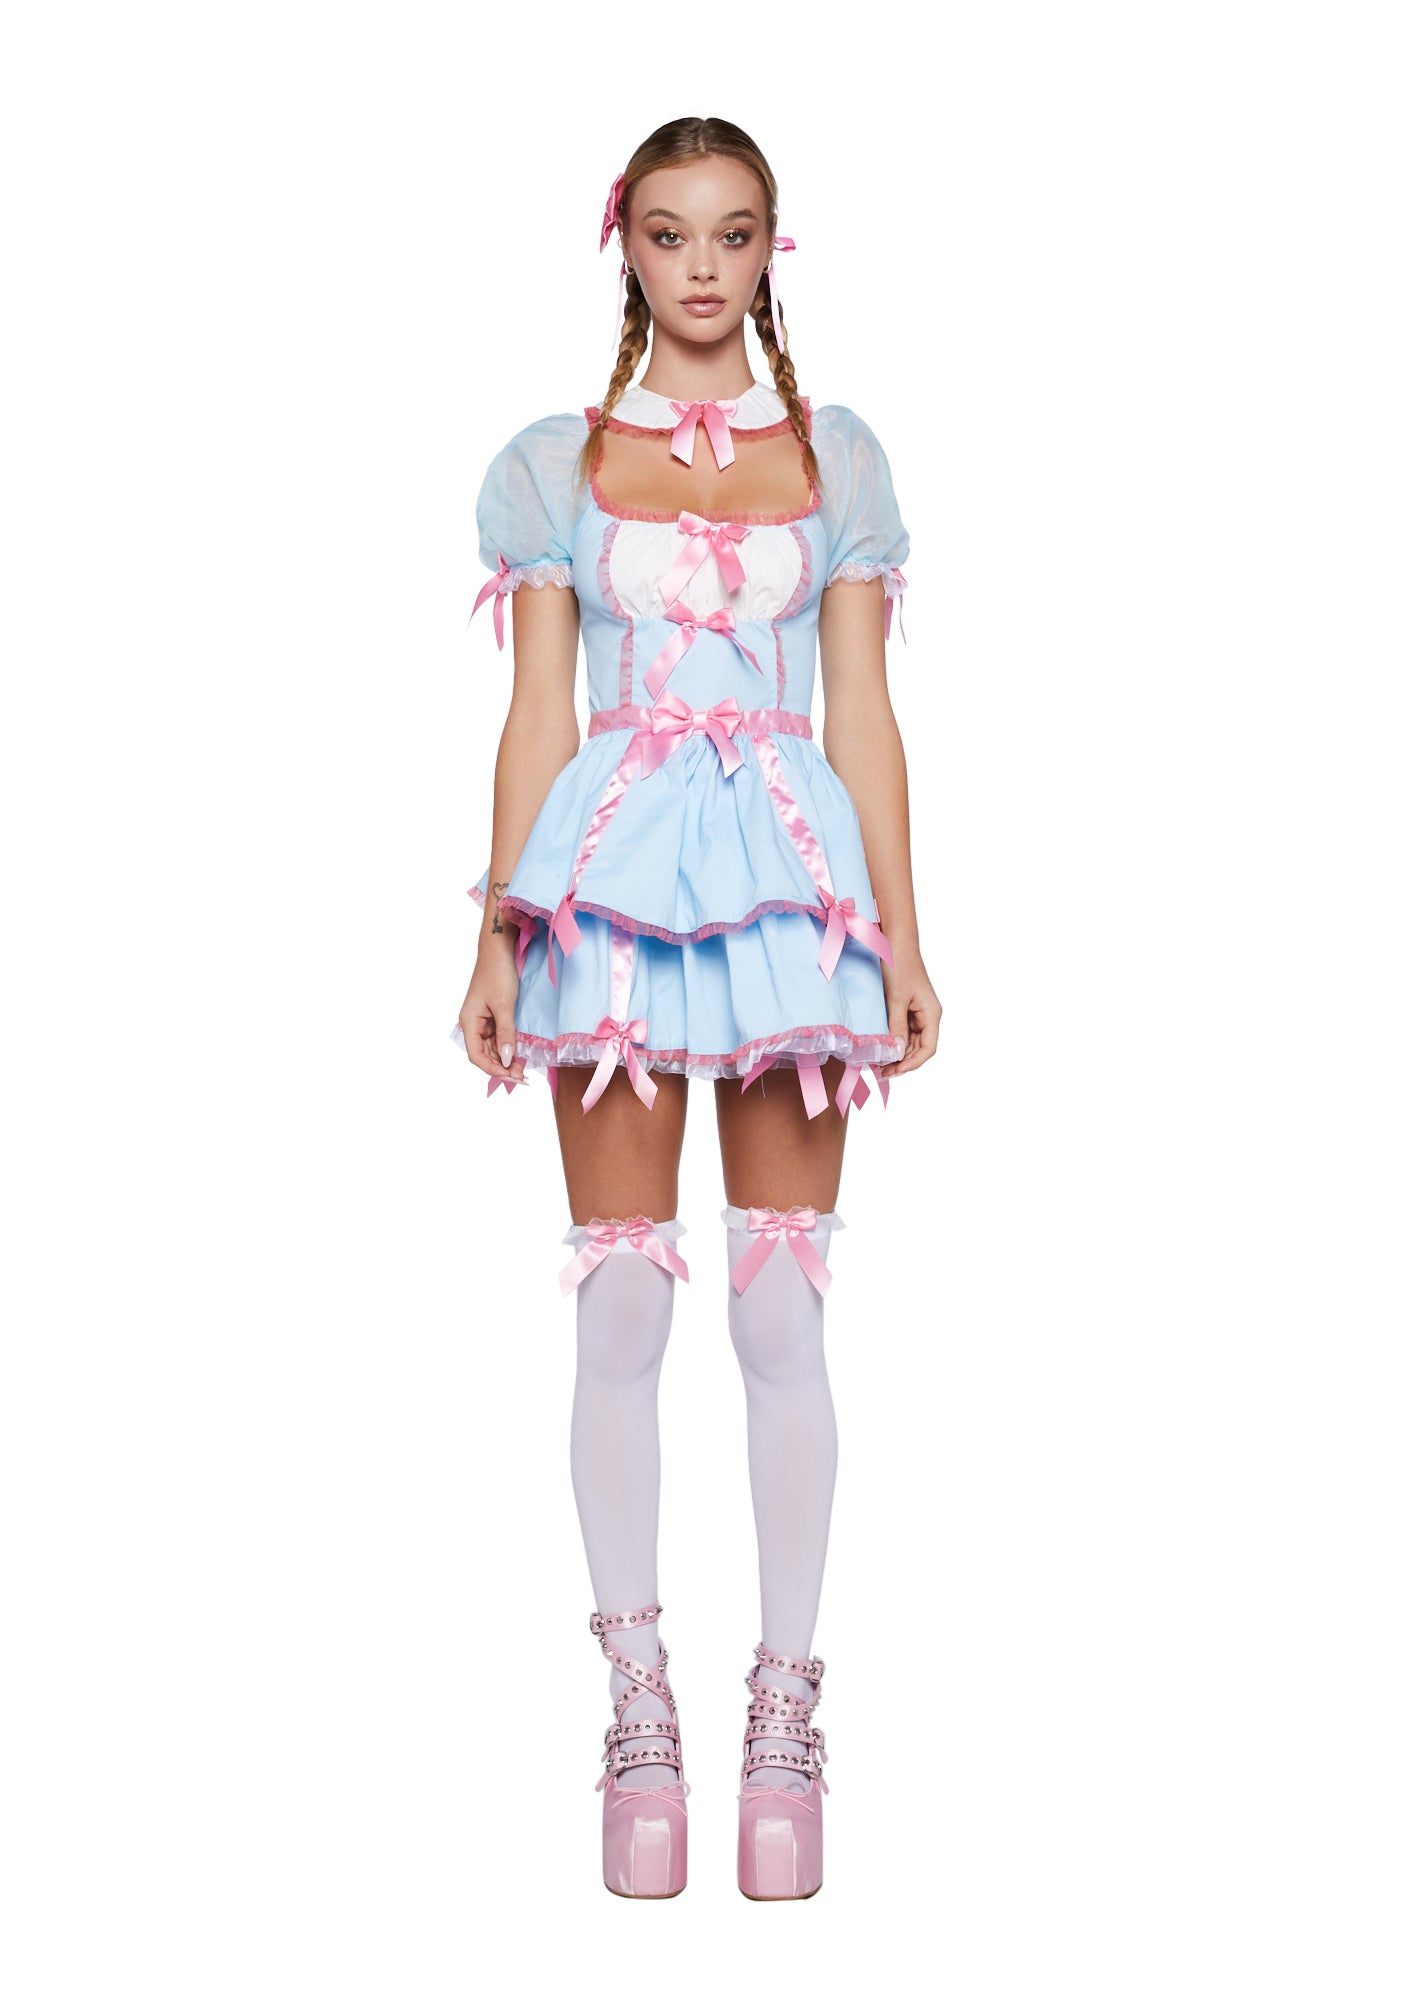 Trickz N Treatz Kawaii Doll Costume - Blue/Pink